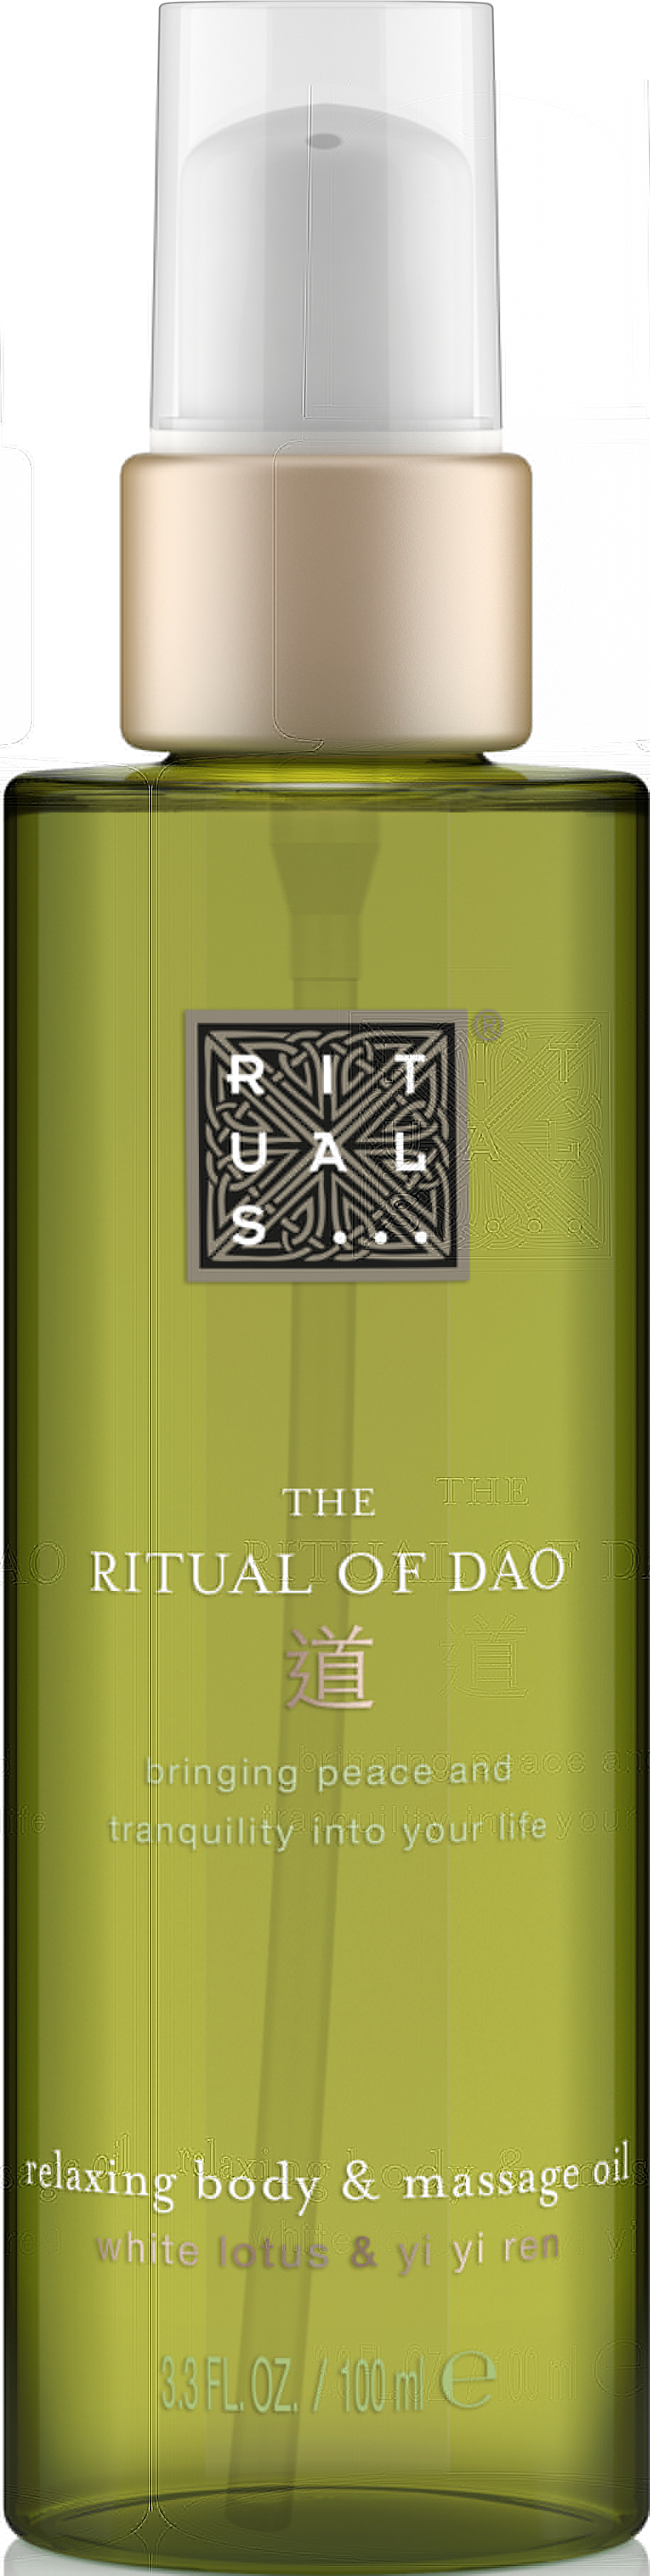 The Ritual of Dao Body & Massage oil